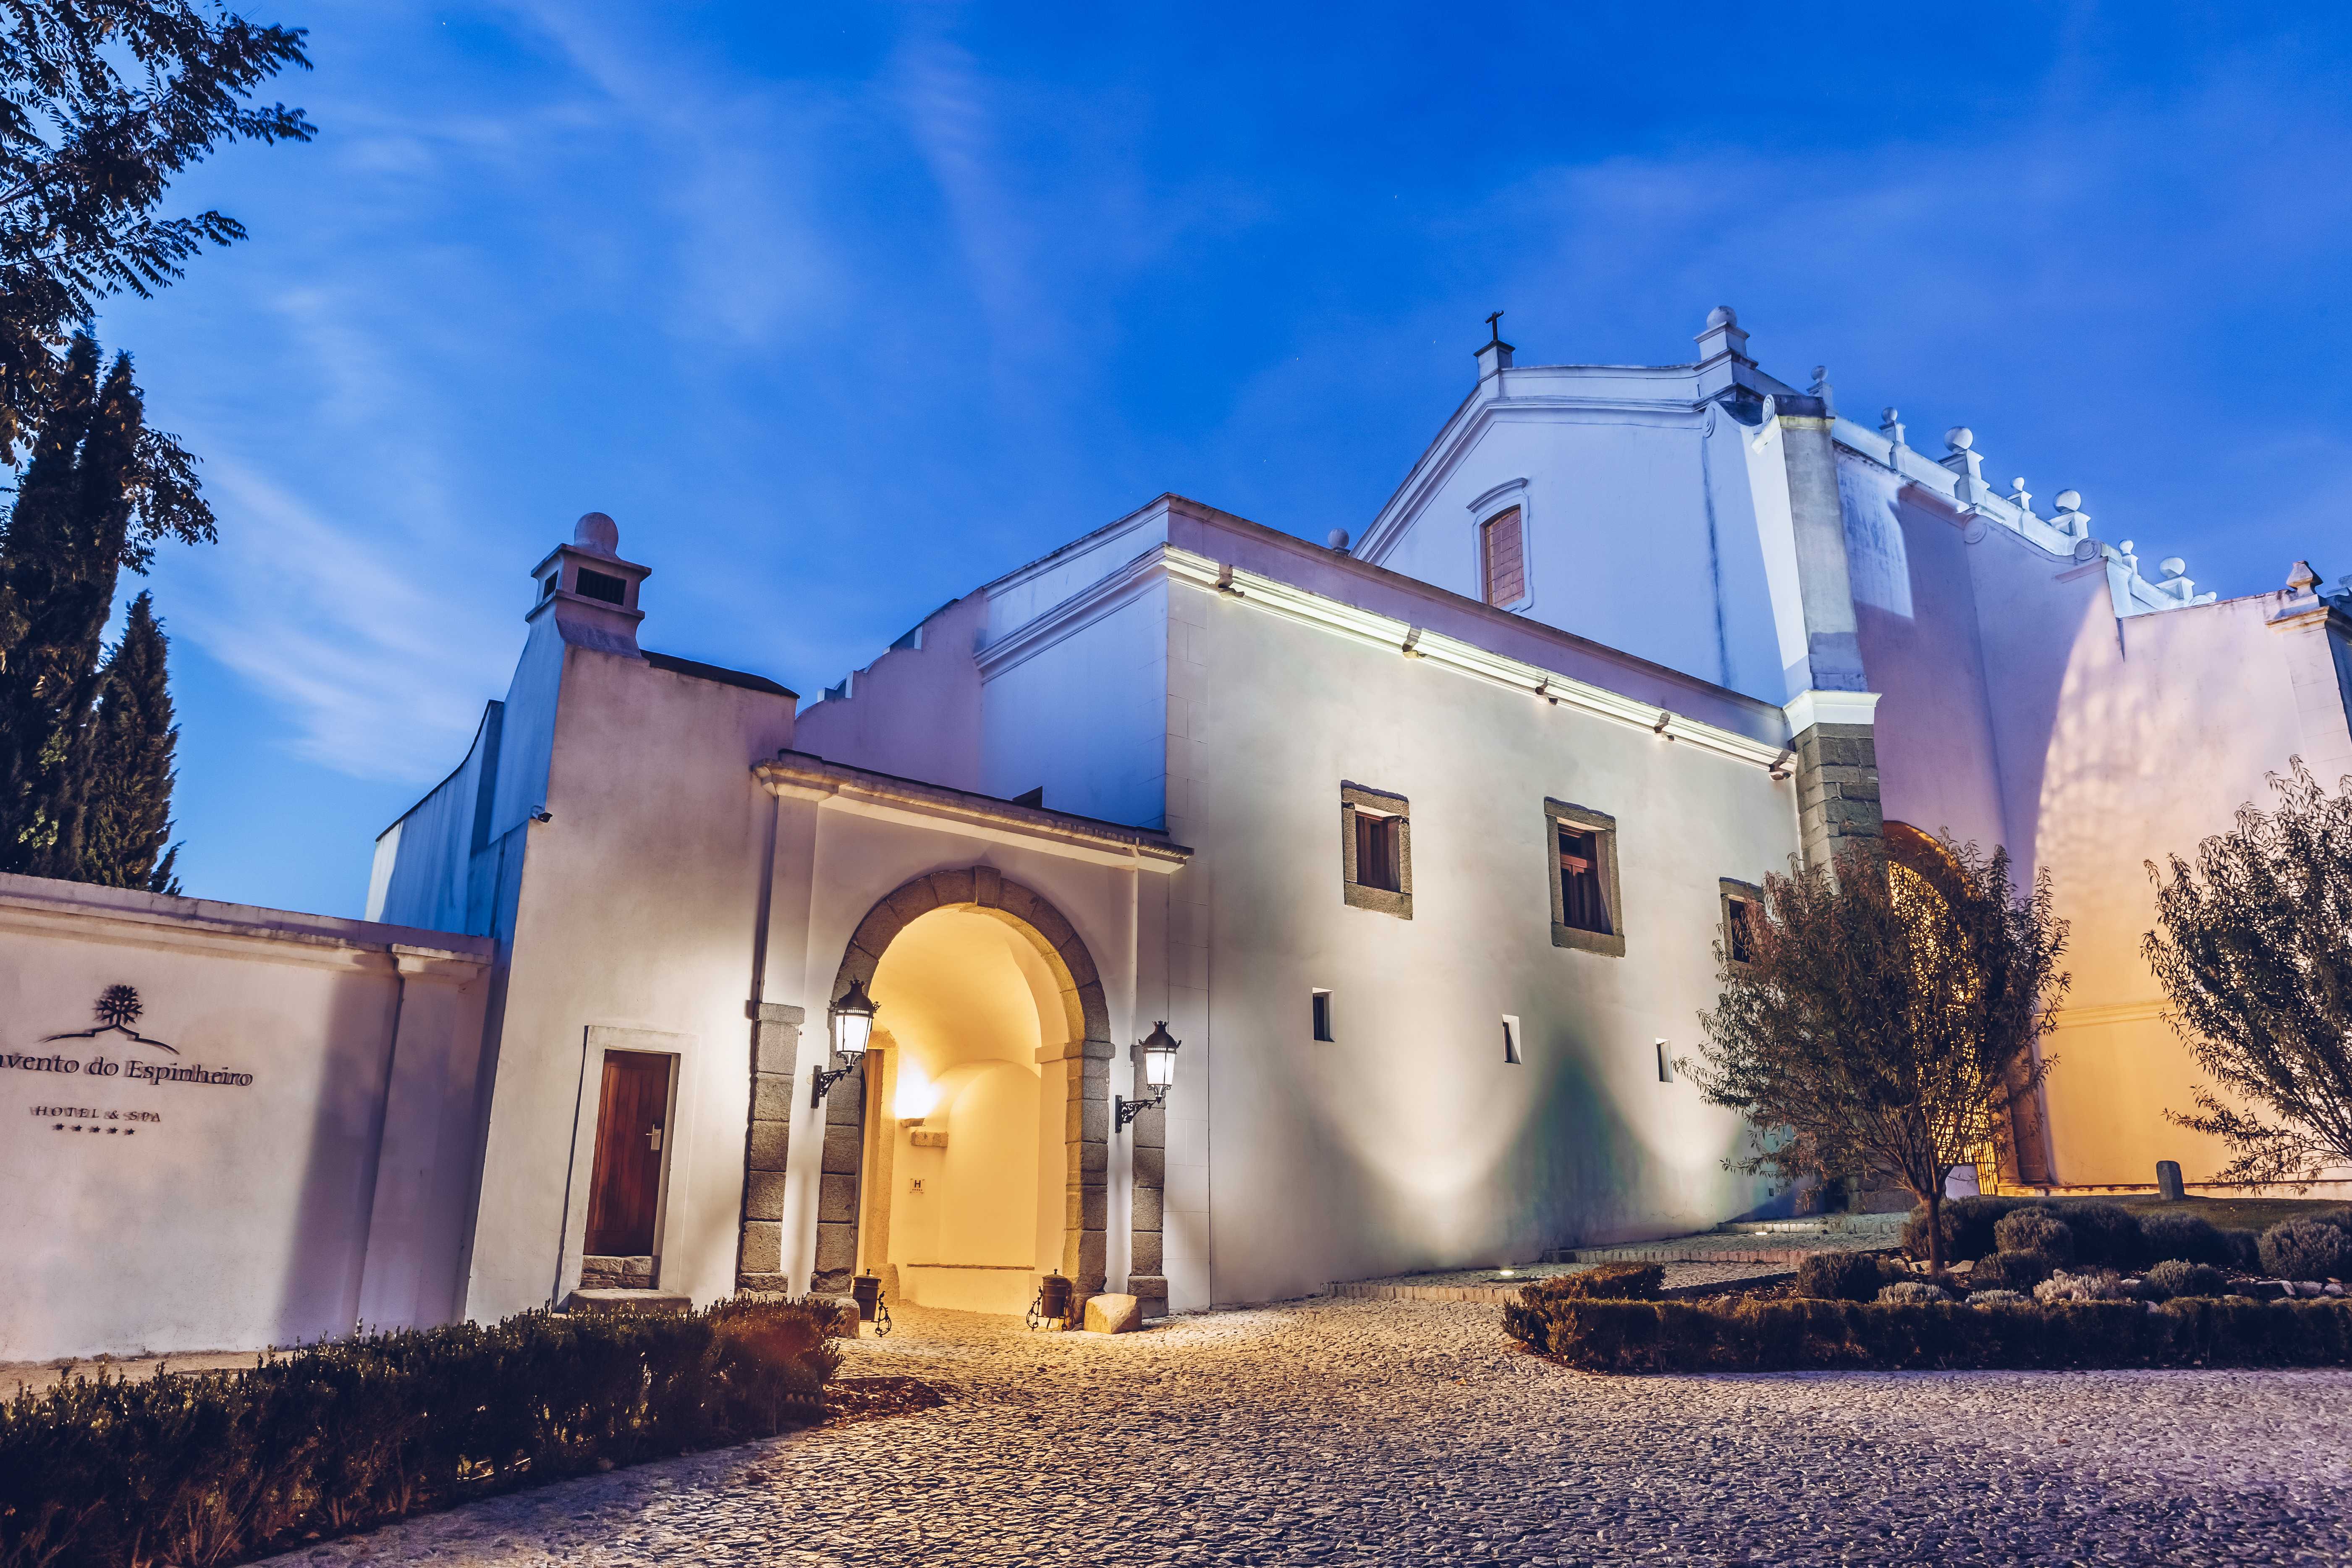 The Convento do Espinheiro, Historic Hotel & Spa